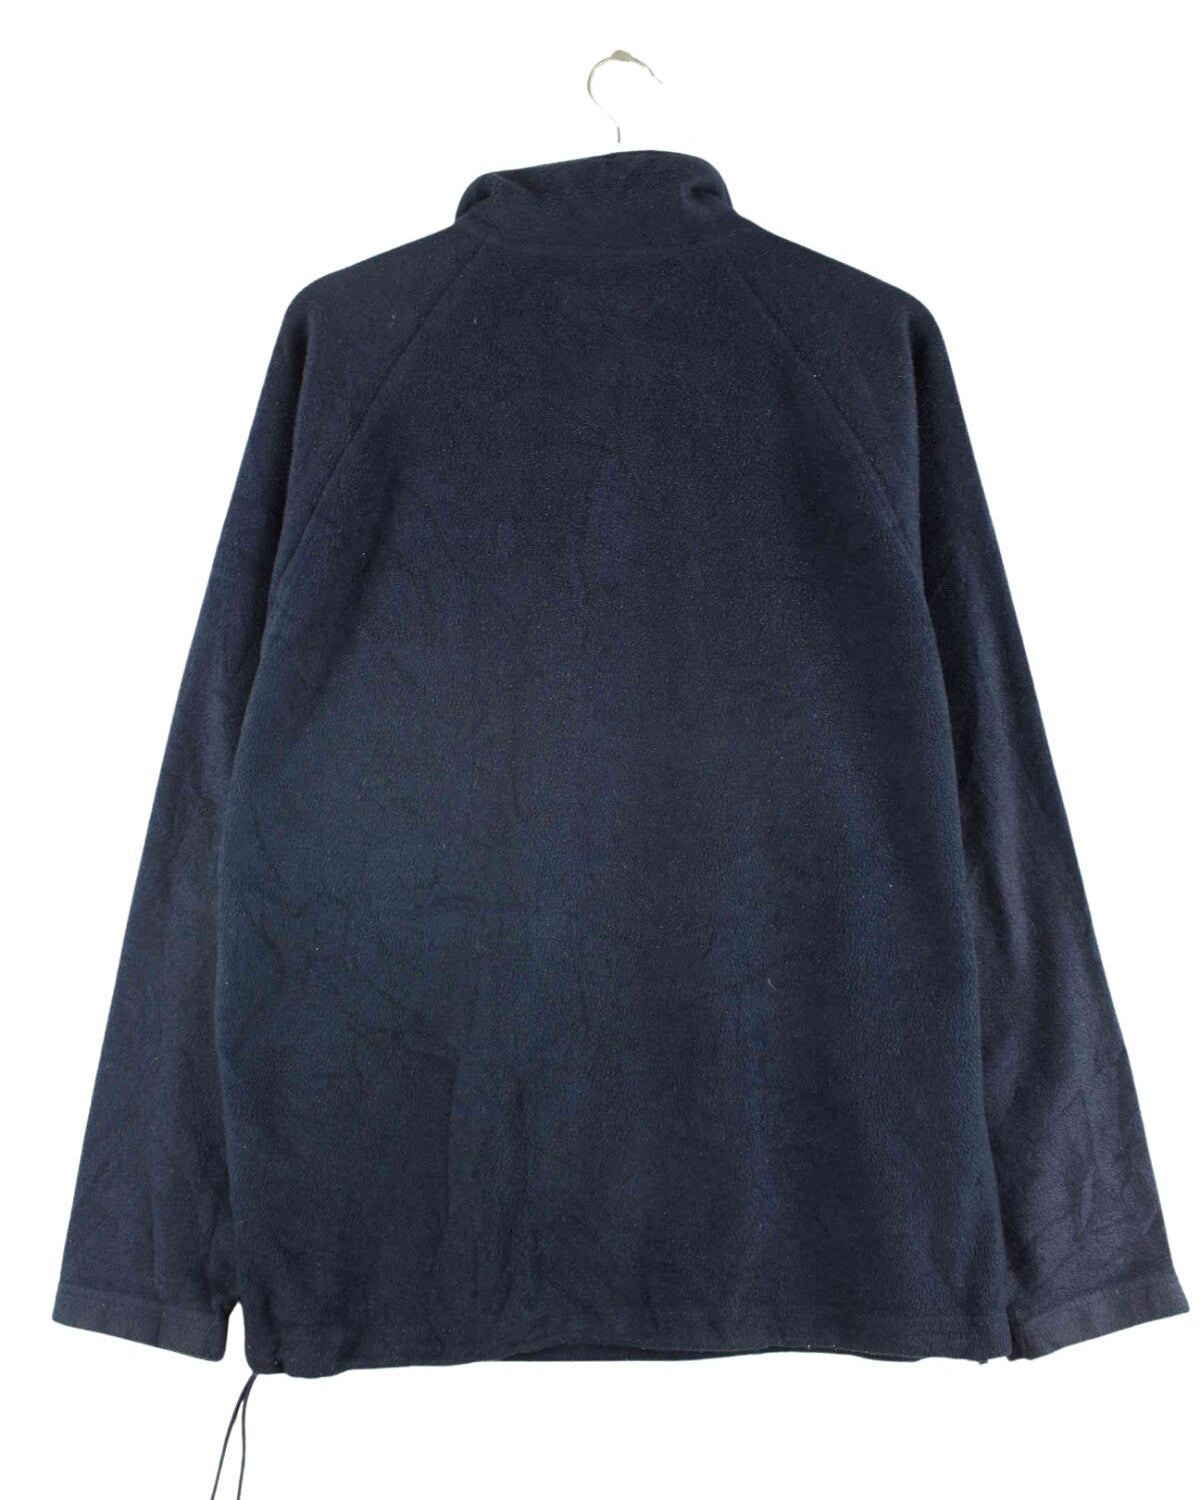 Kappa Half Zip Fleece Sweater Blau M (back image)